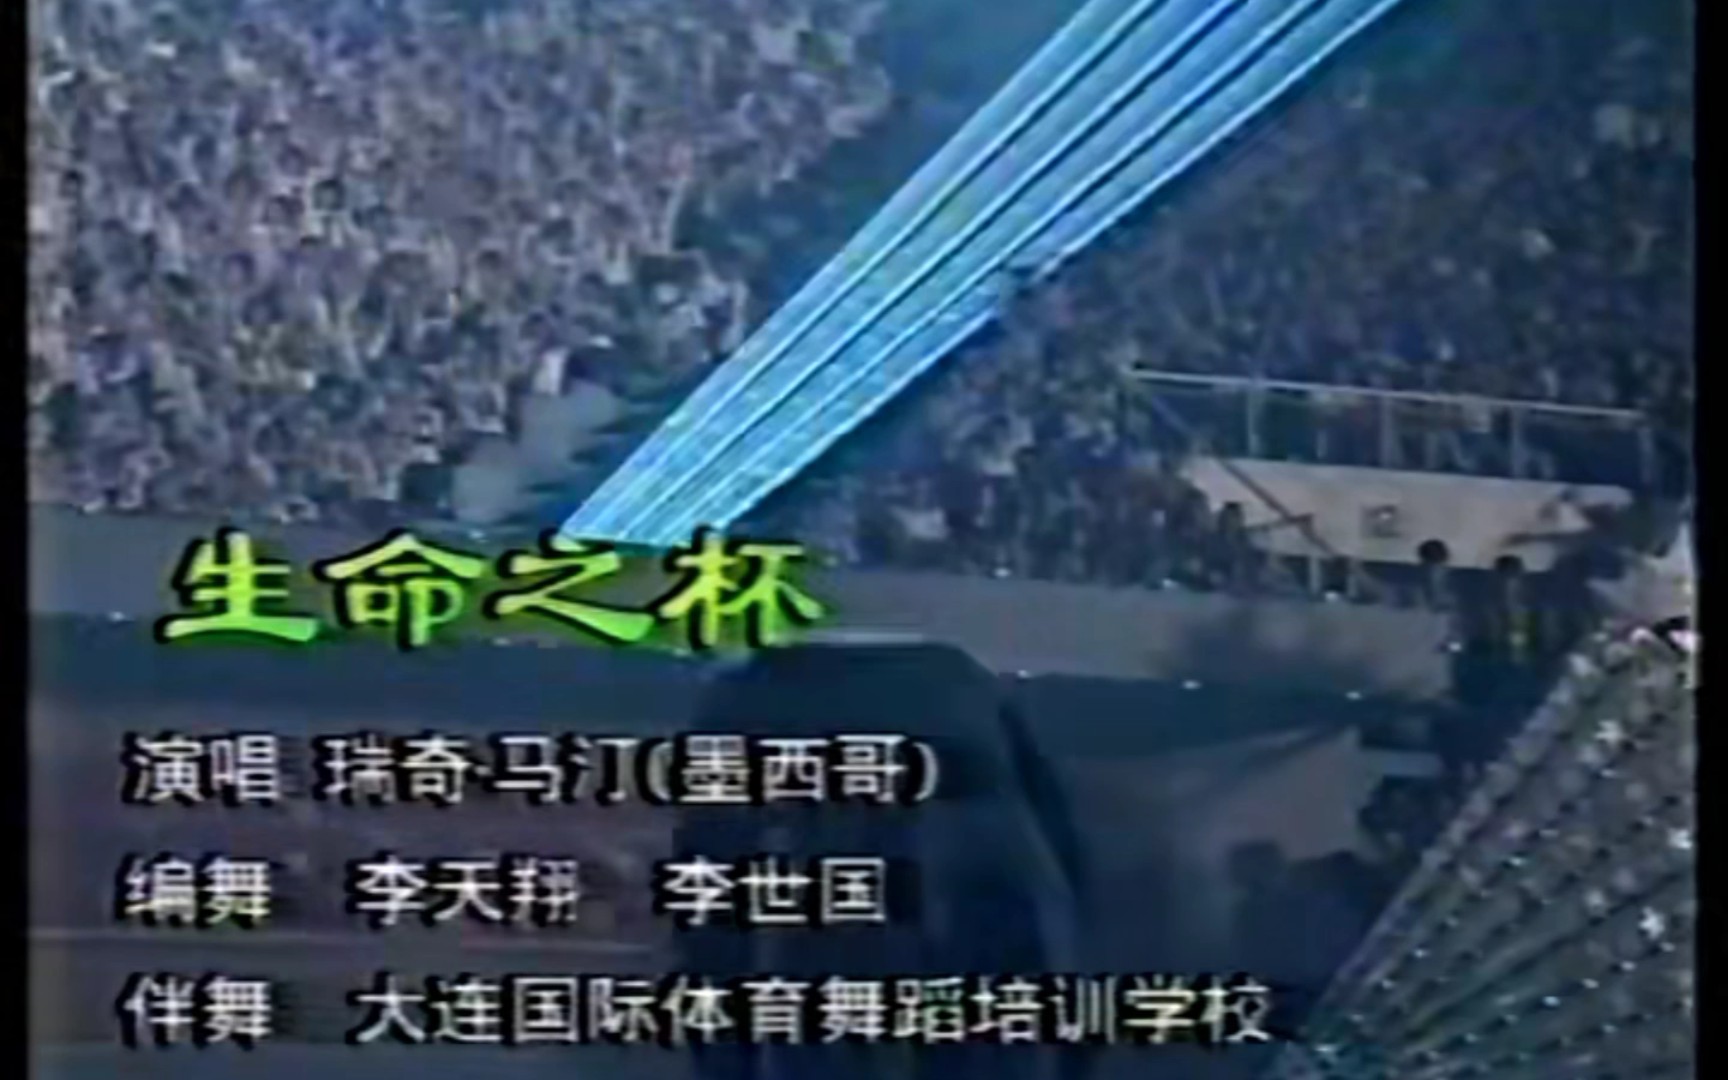 瑞奇马丁 1998年在大连国际服装节晚会演唱生命之杯